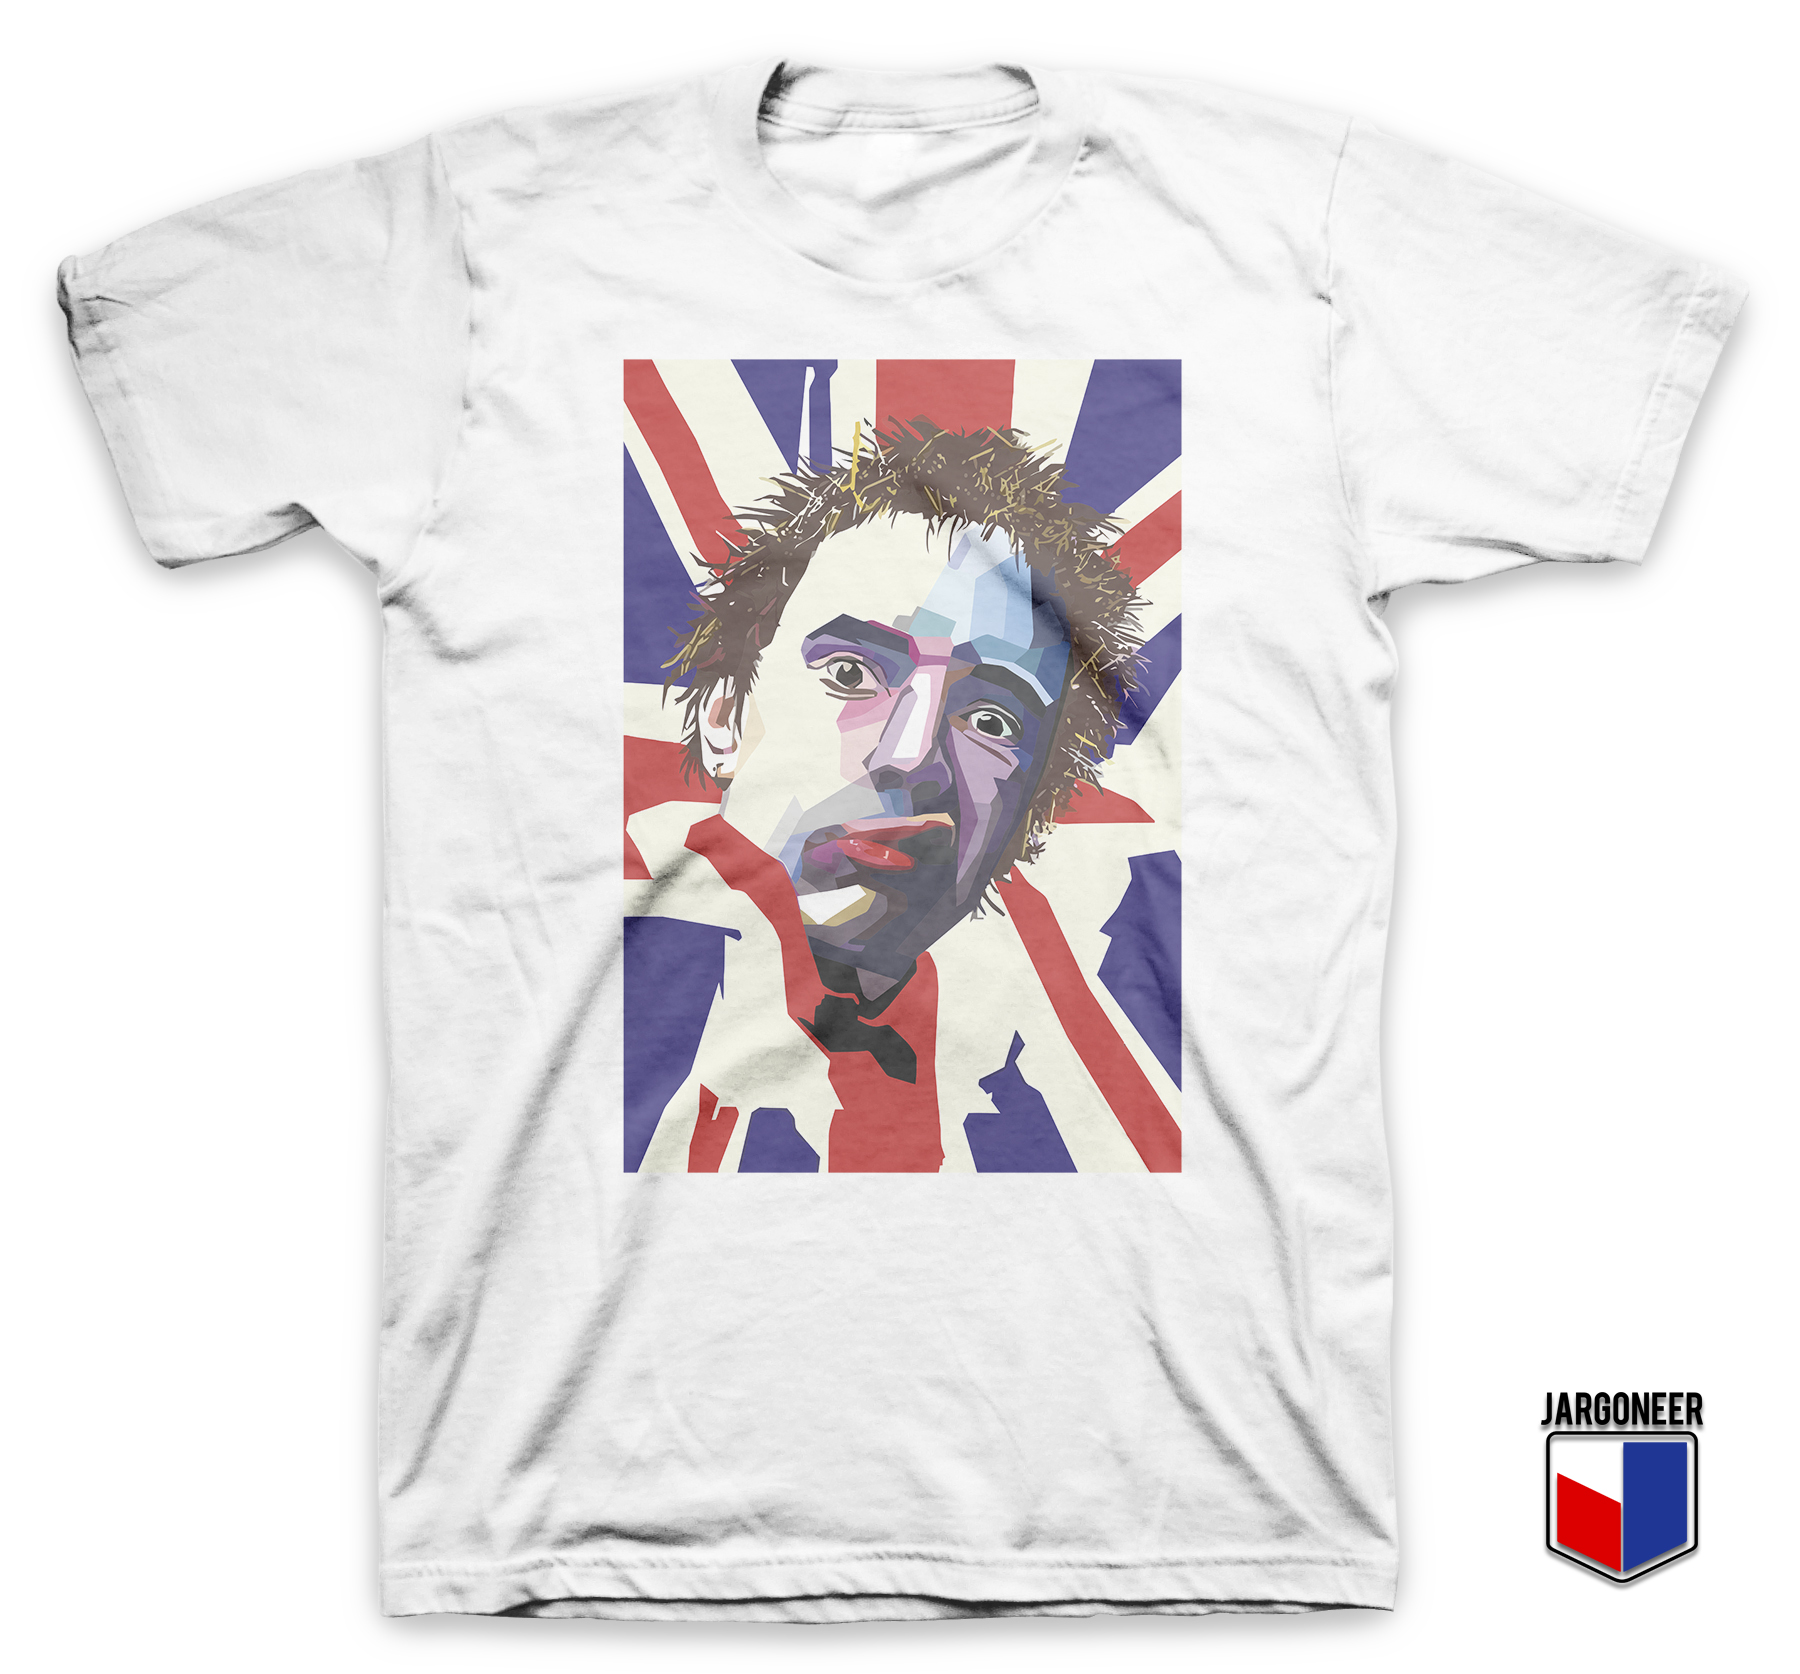 Johnny Rotten White T Shirt - Shop Unique Graphic Cool Shirt Designs